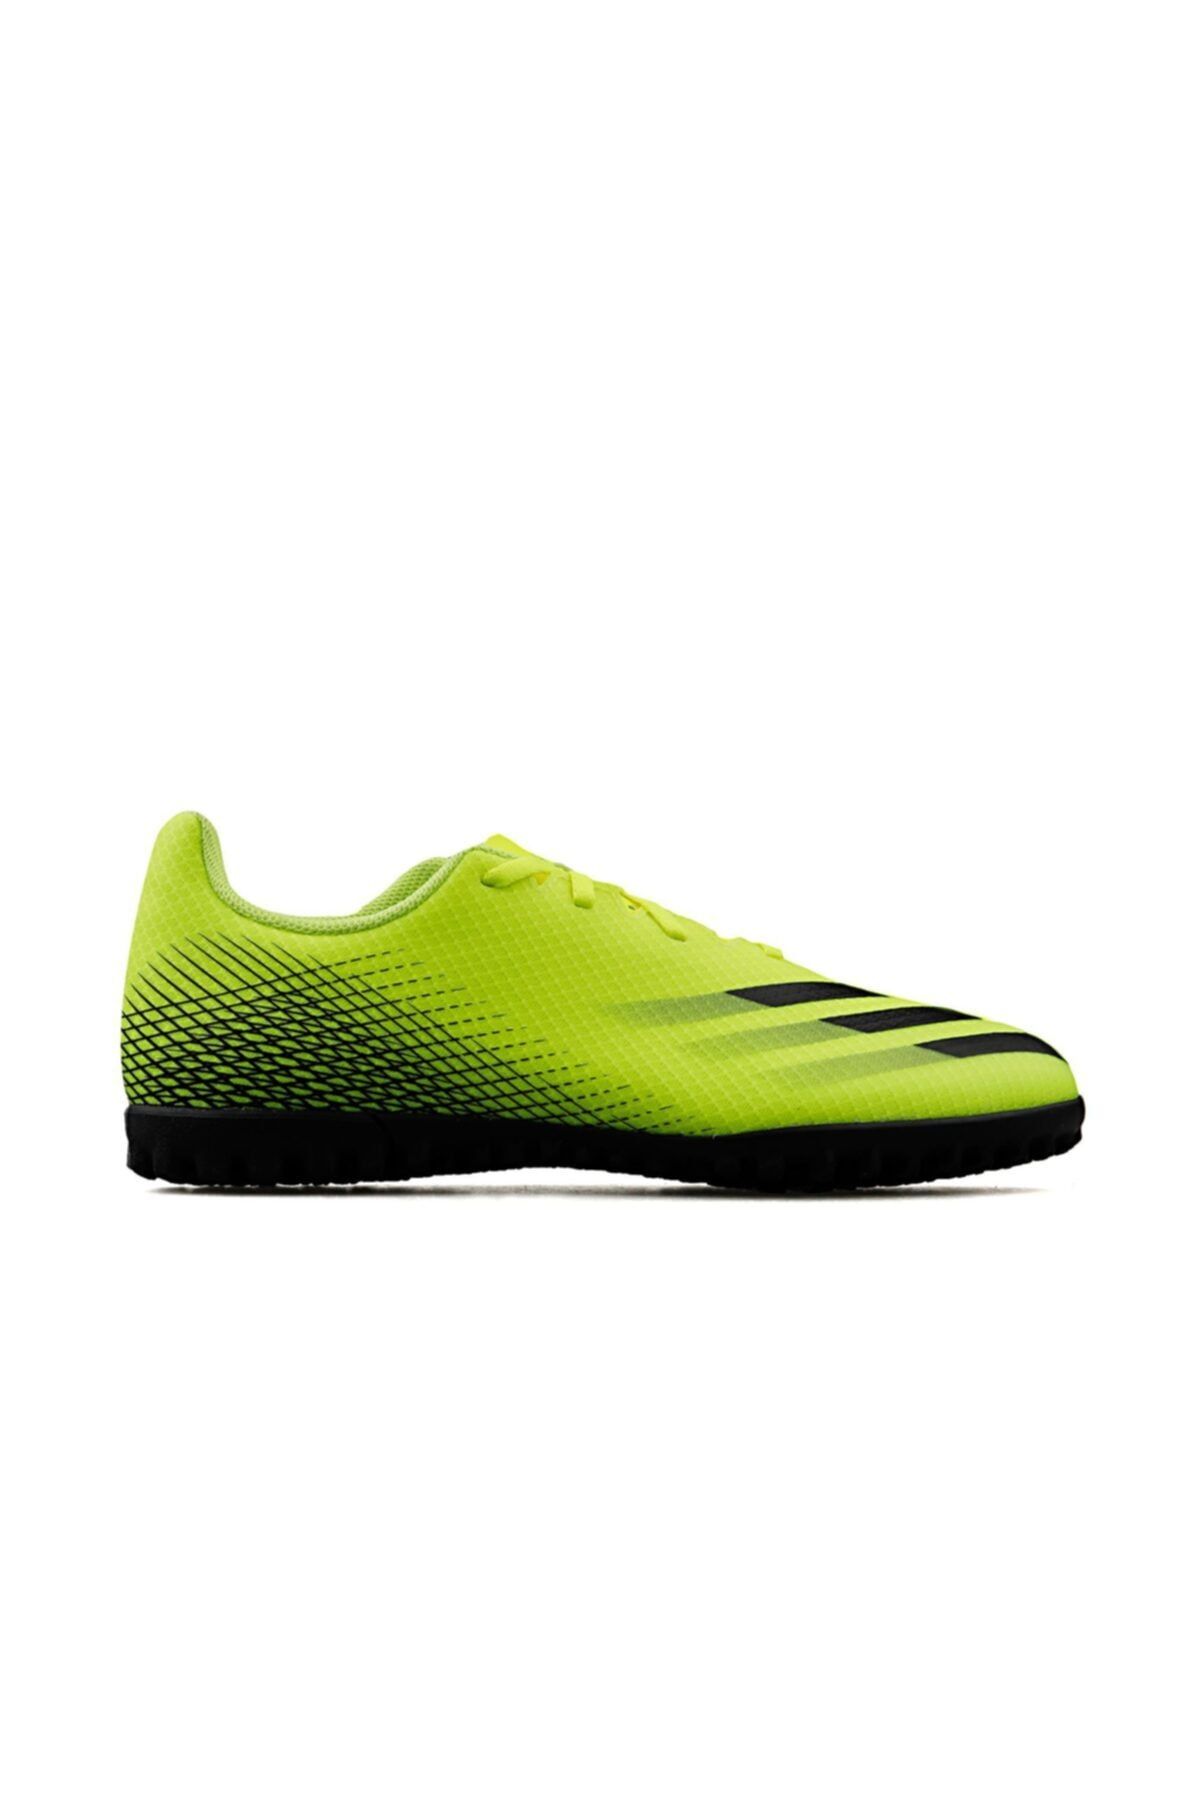 adidas Erkek Halı Saha Ayakkabısı Fw6917 Sarı X Ghosted 4 Tf